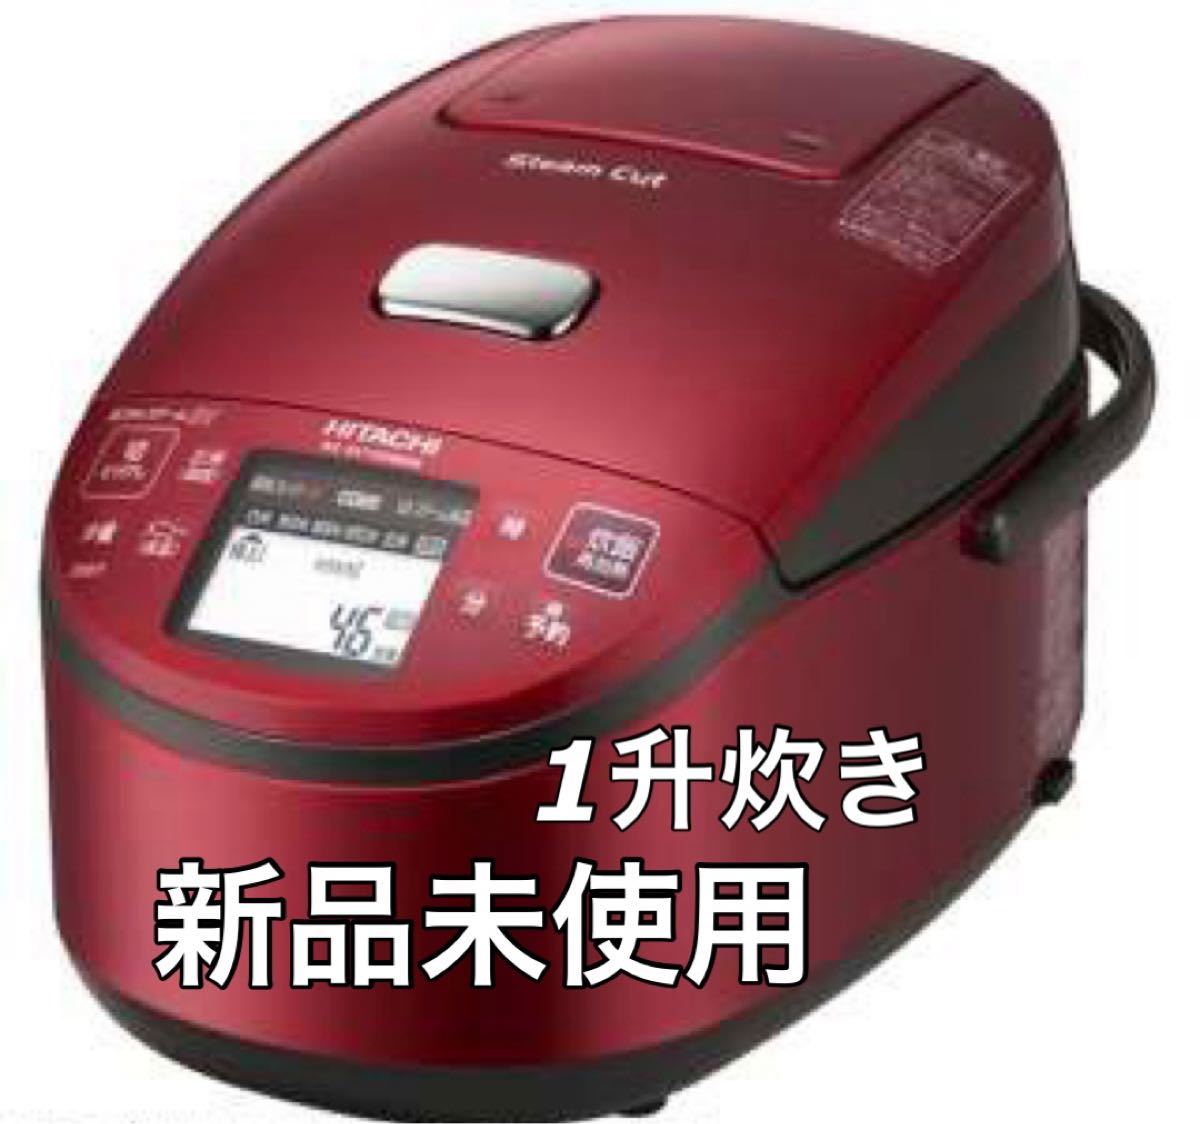 【新品 未開封】HITACHI 圧力スチームIH 炊飯器 1升炊き 極上炊き